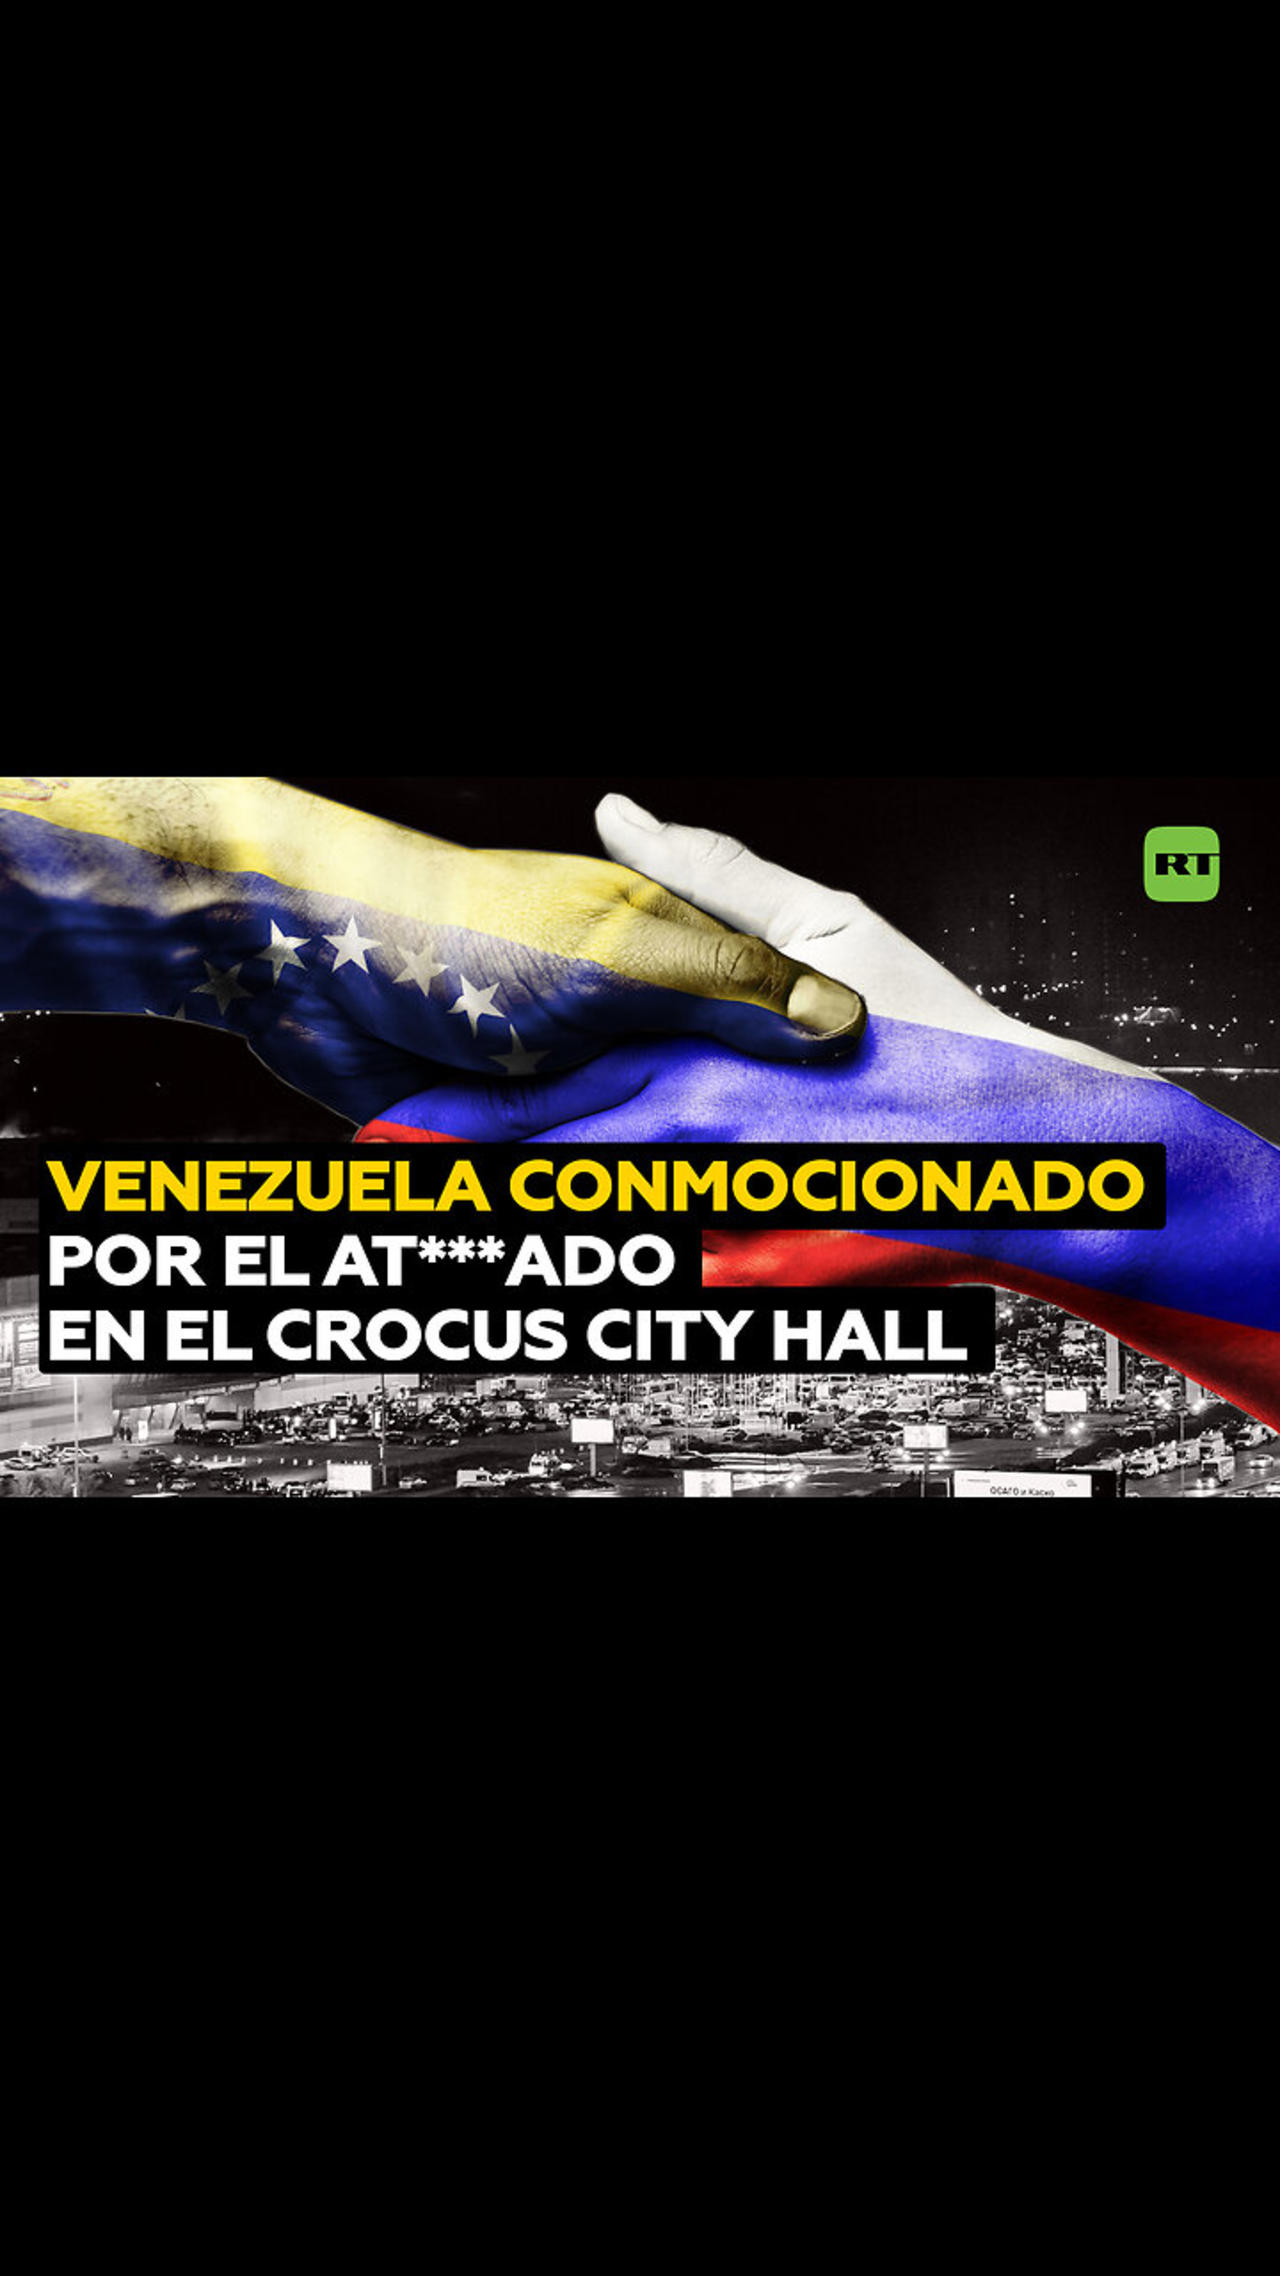 Conmoción en Venezuela por el ate**ado en el Crocus City Hall